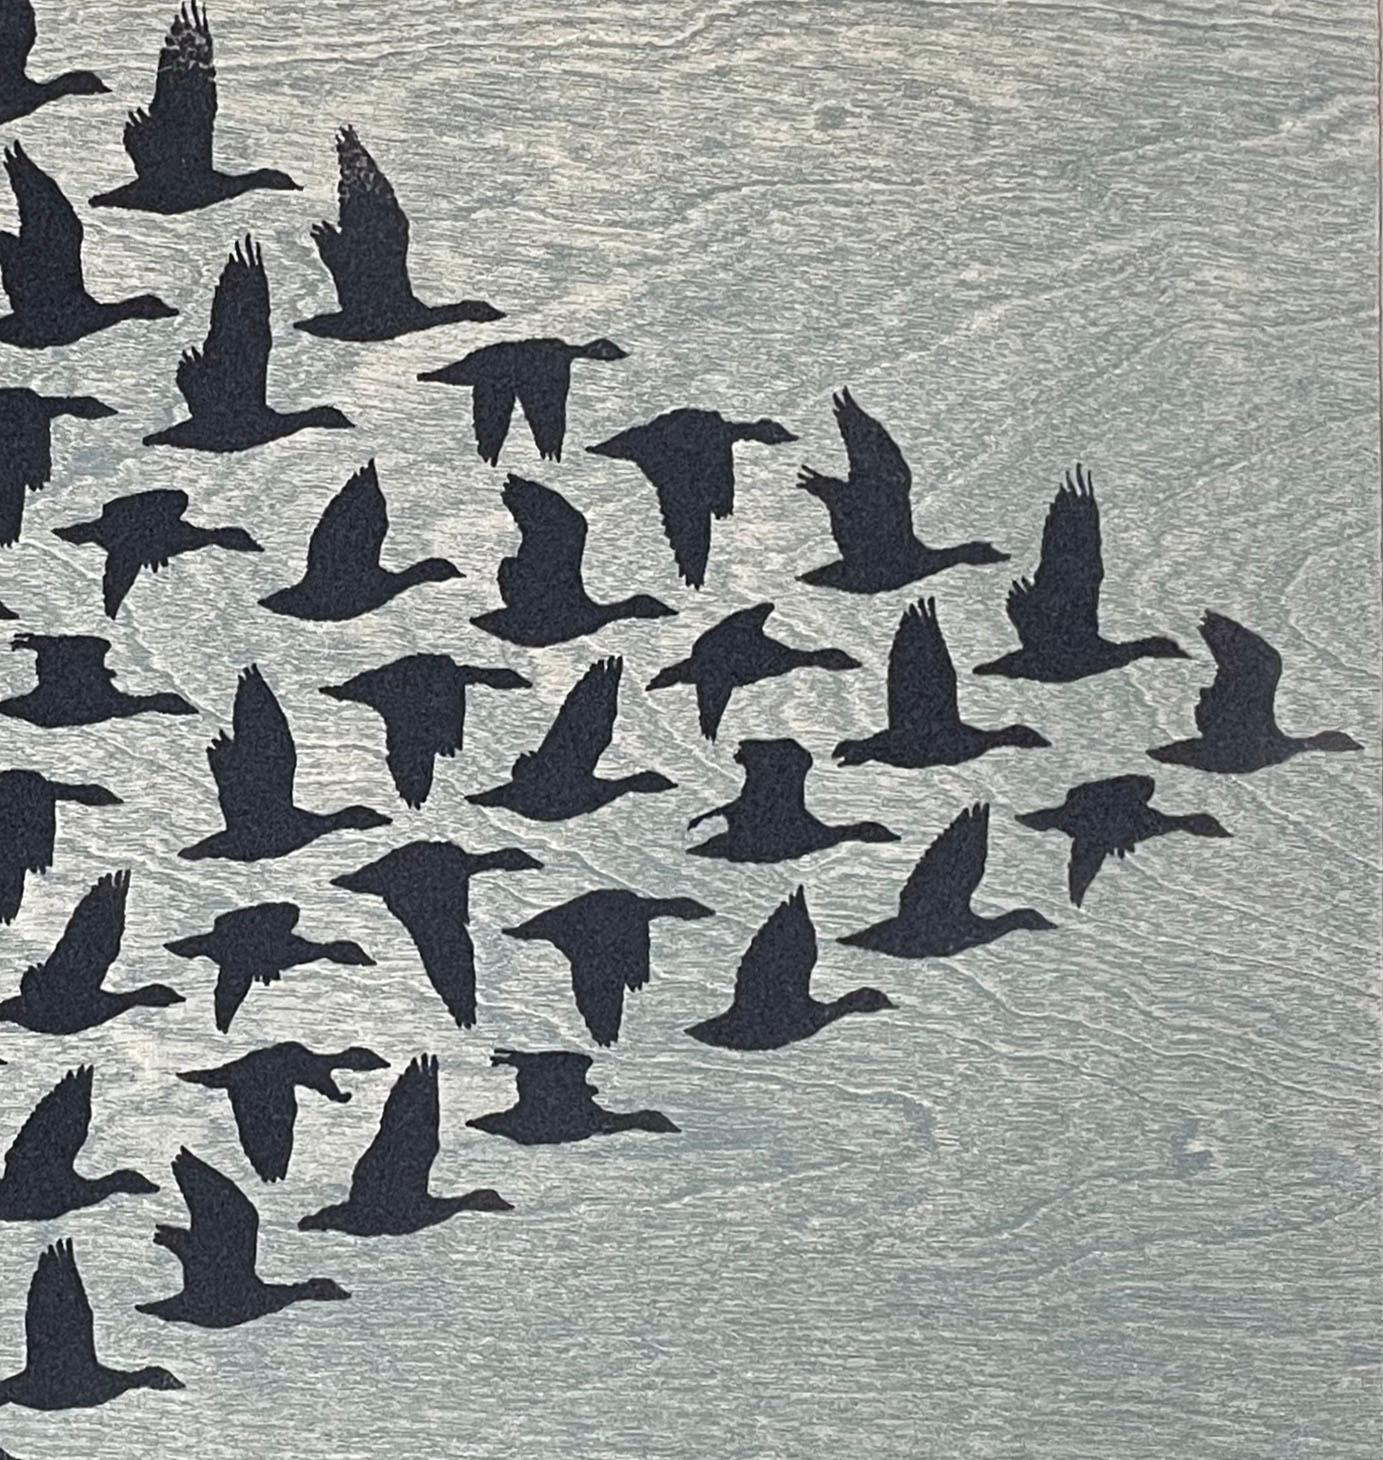 Skein Flock, von Kelvin Mann
Medium: Holzschnitt mit Siebdruck und Flockfasern
Bildgröße:  29,5 x 29 Zoll
Auflage von 50 Stück

Kelvin Manns 